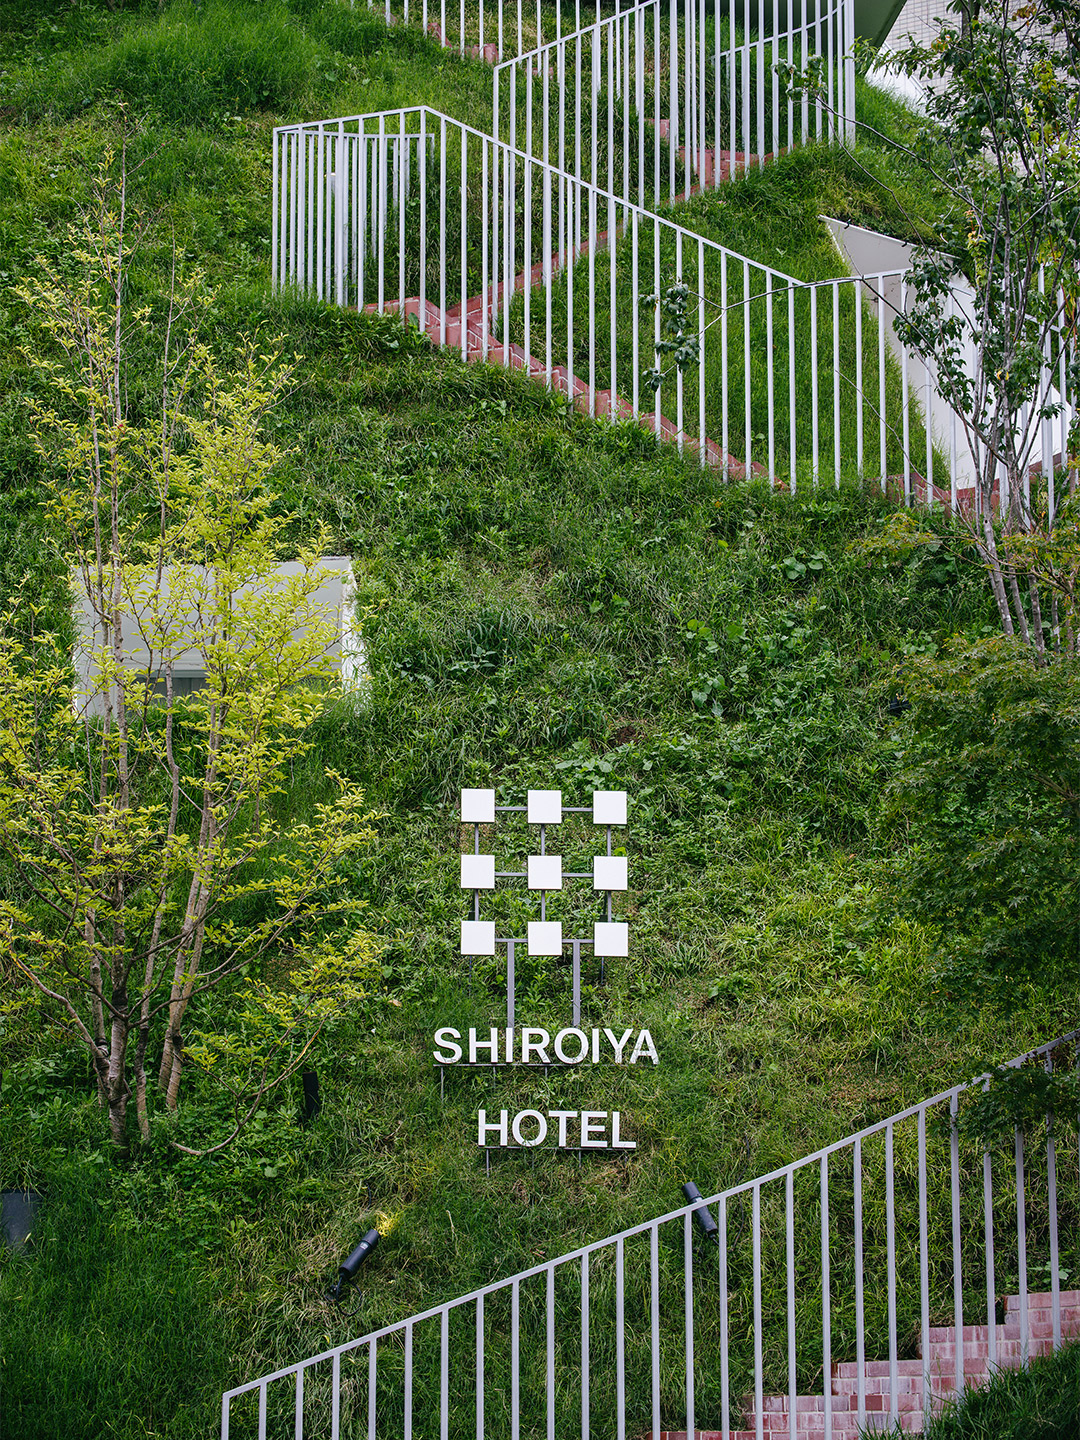 Shiroiya Hotel by Sou Fujimoto architects